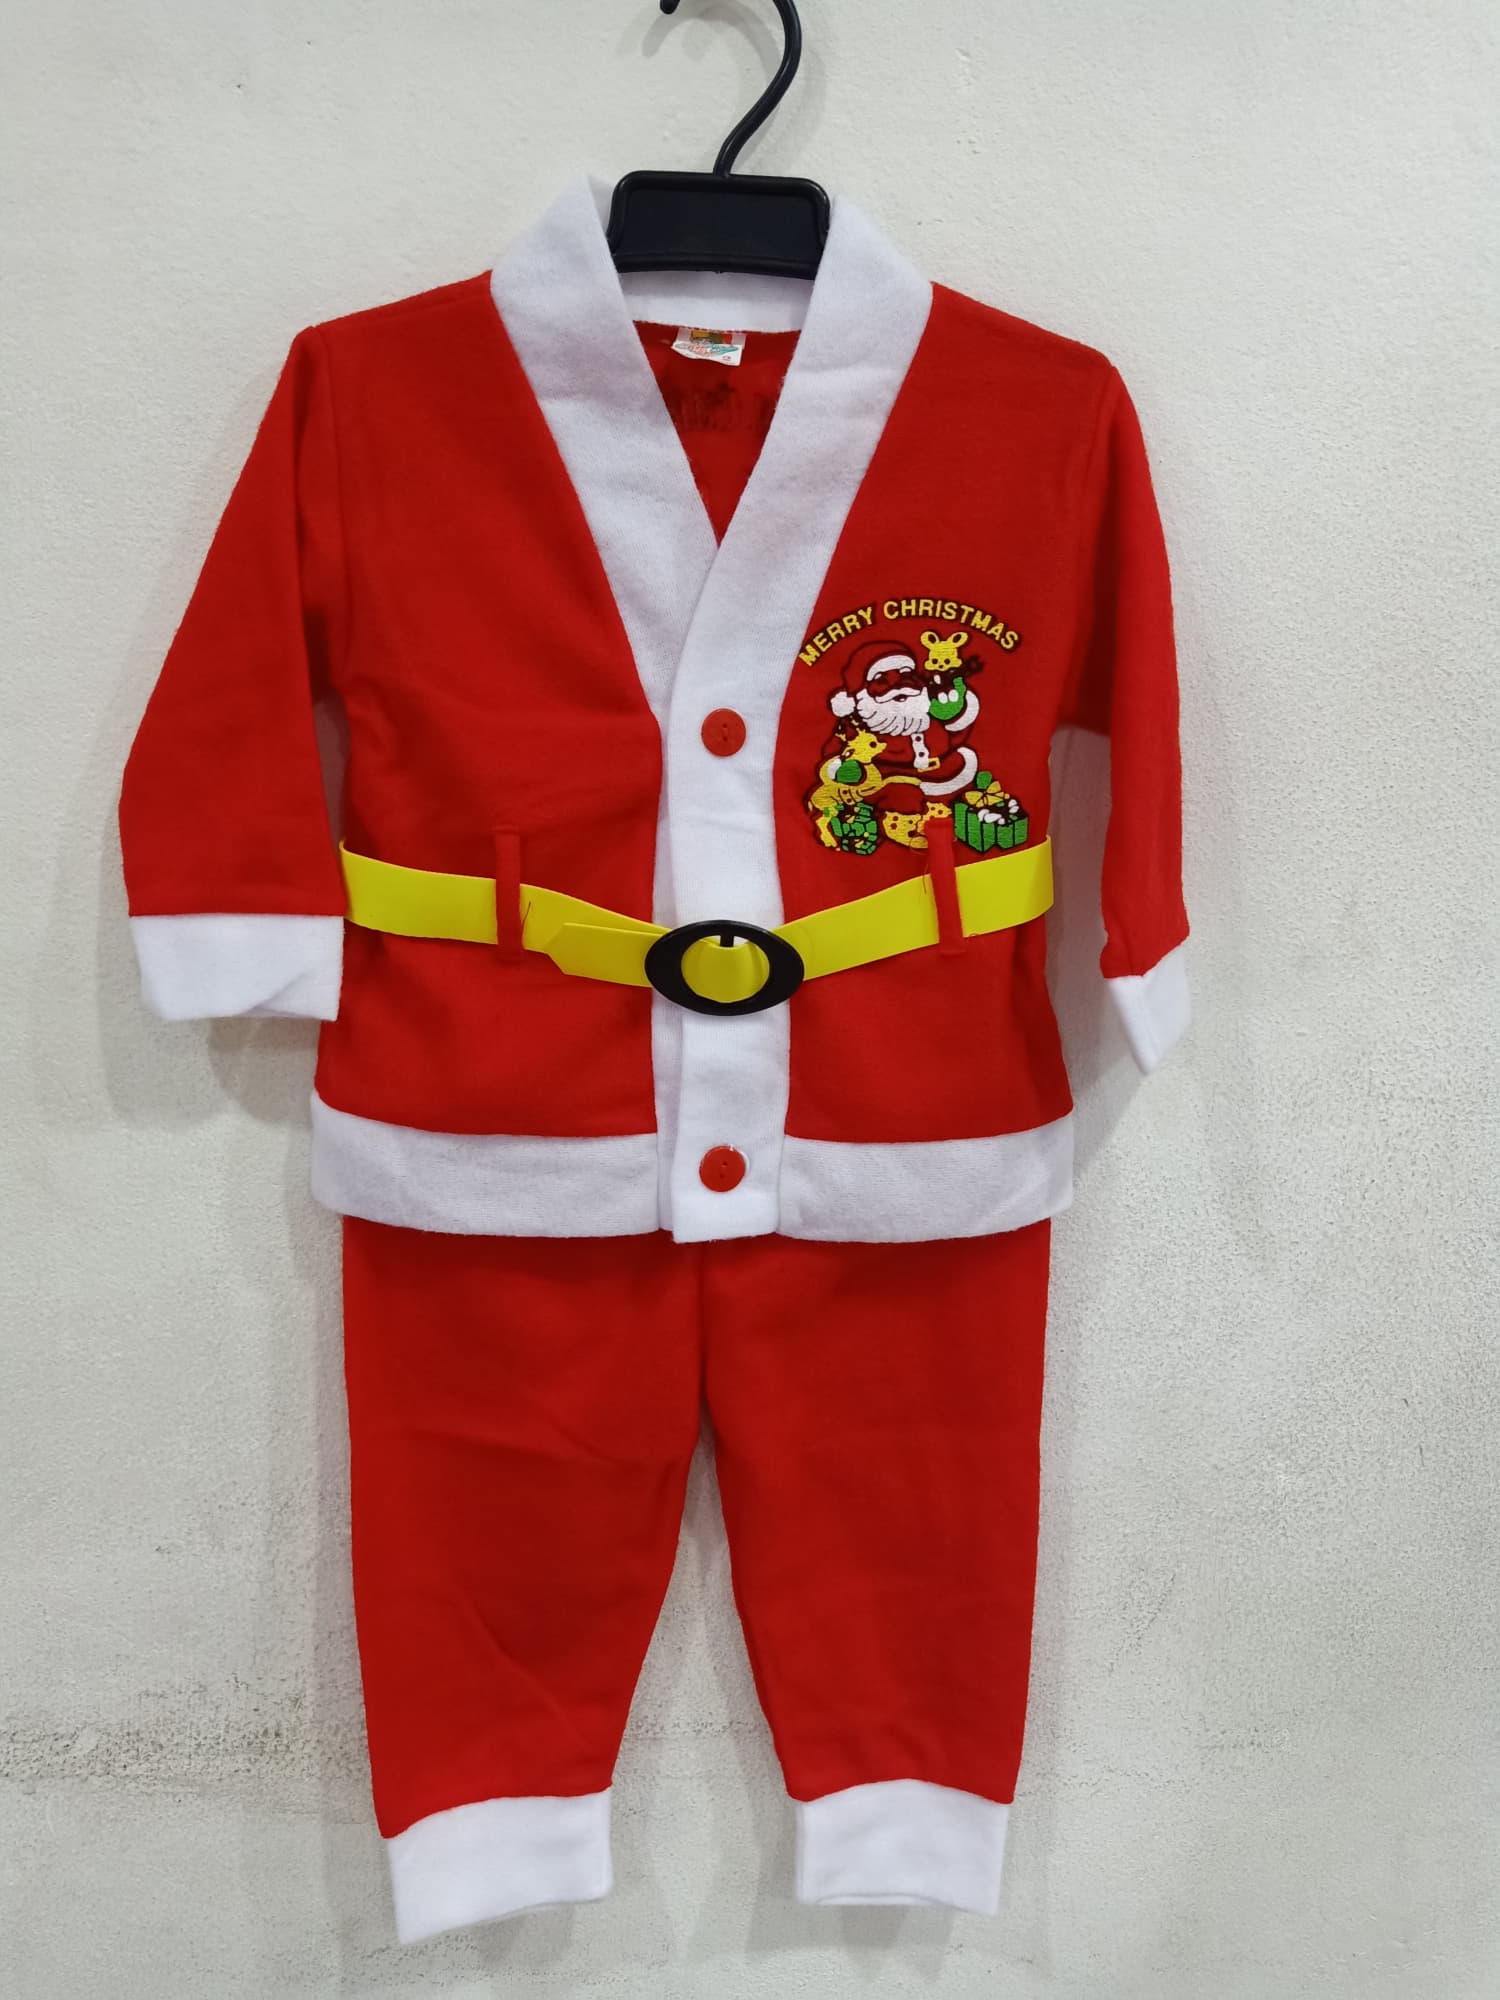 ผ้าสำลี 1 ชุด มี 3 ชิ้น เด็กอายุ 1-3 ปี เสื้อ + กางเกง + เข็มขัด ชุดซานตาครอส ชุดซานต้า ชุด ซานตาครอส ซานต้า หมวกซานต้า หมวกซานตาครอส ชุดแฟนซี unisex children santacros costume party fancy merry chrismas happy new year m24 shop